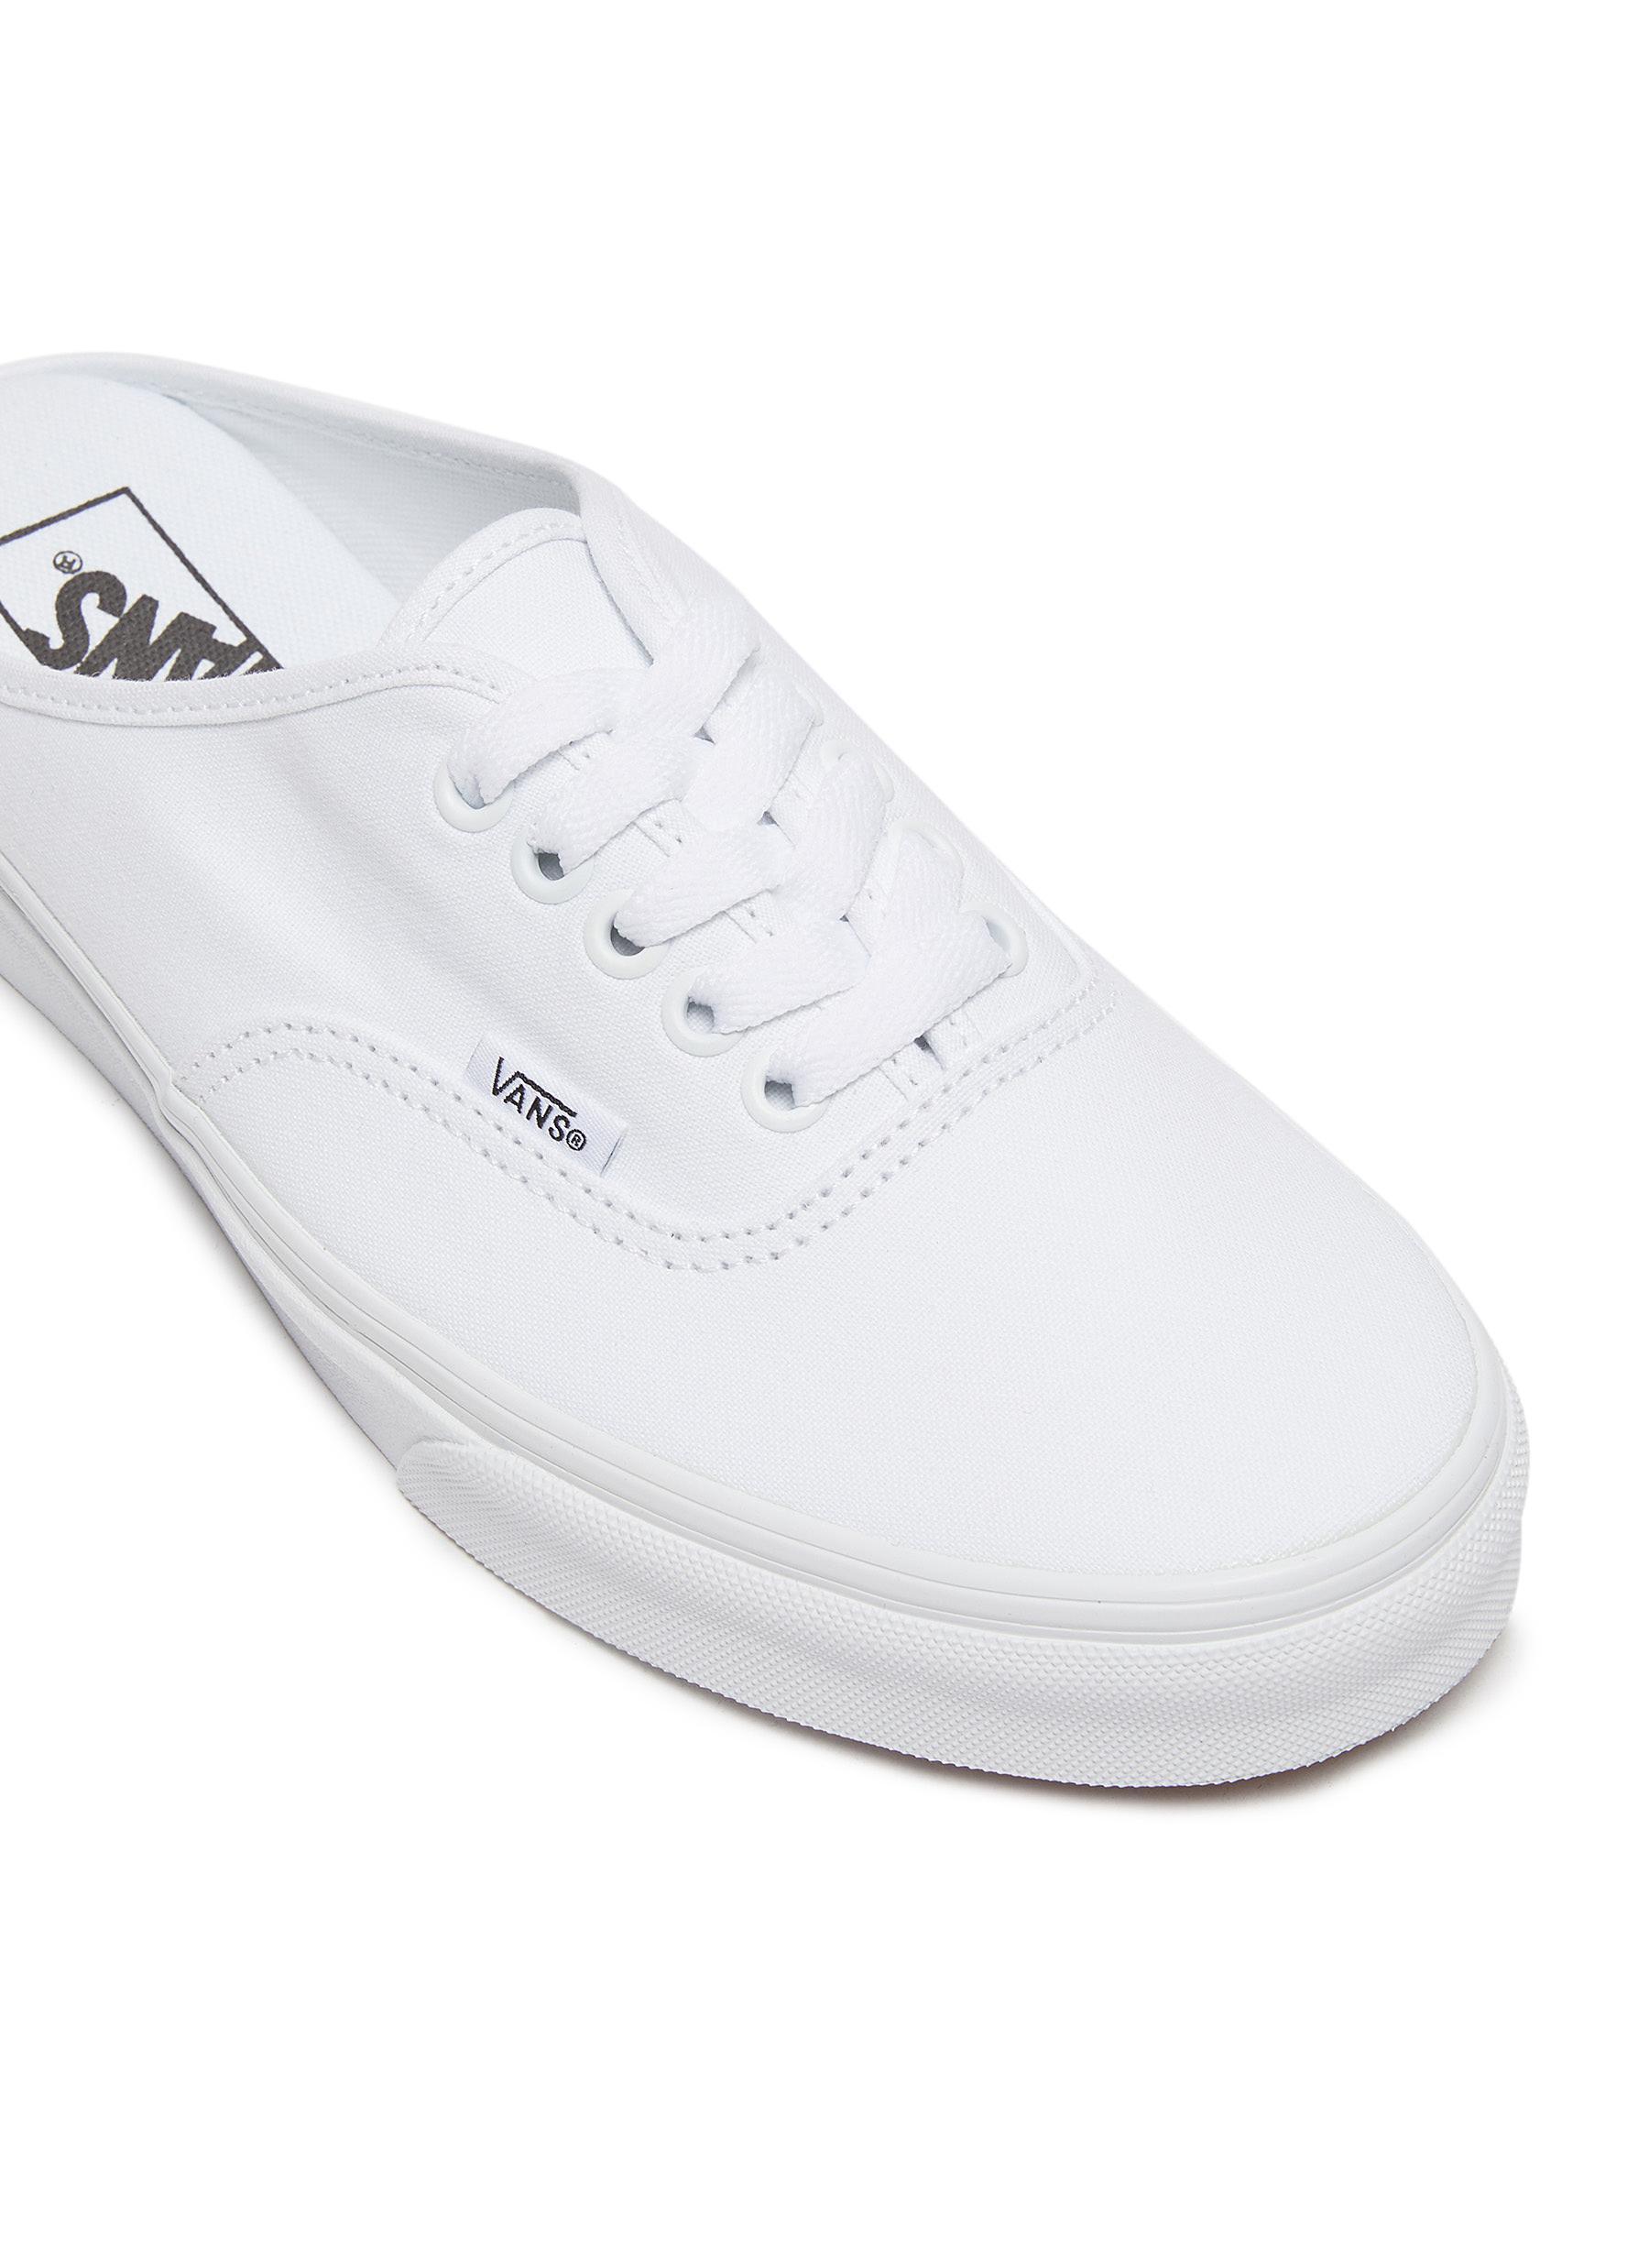 Vans White Authentic' Canvas Mules Women Shoes Sneakers Low-top Authentic'  Canvas Mules | Lyst